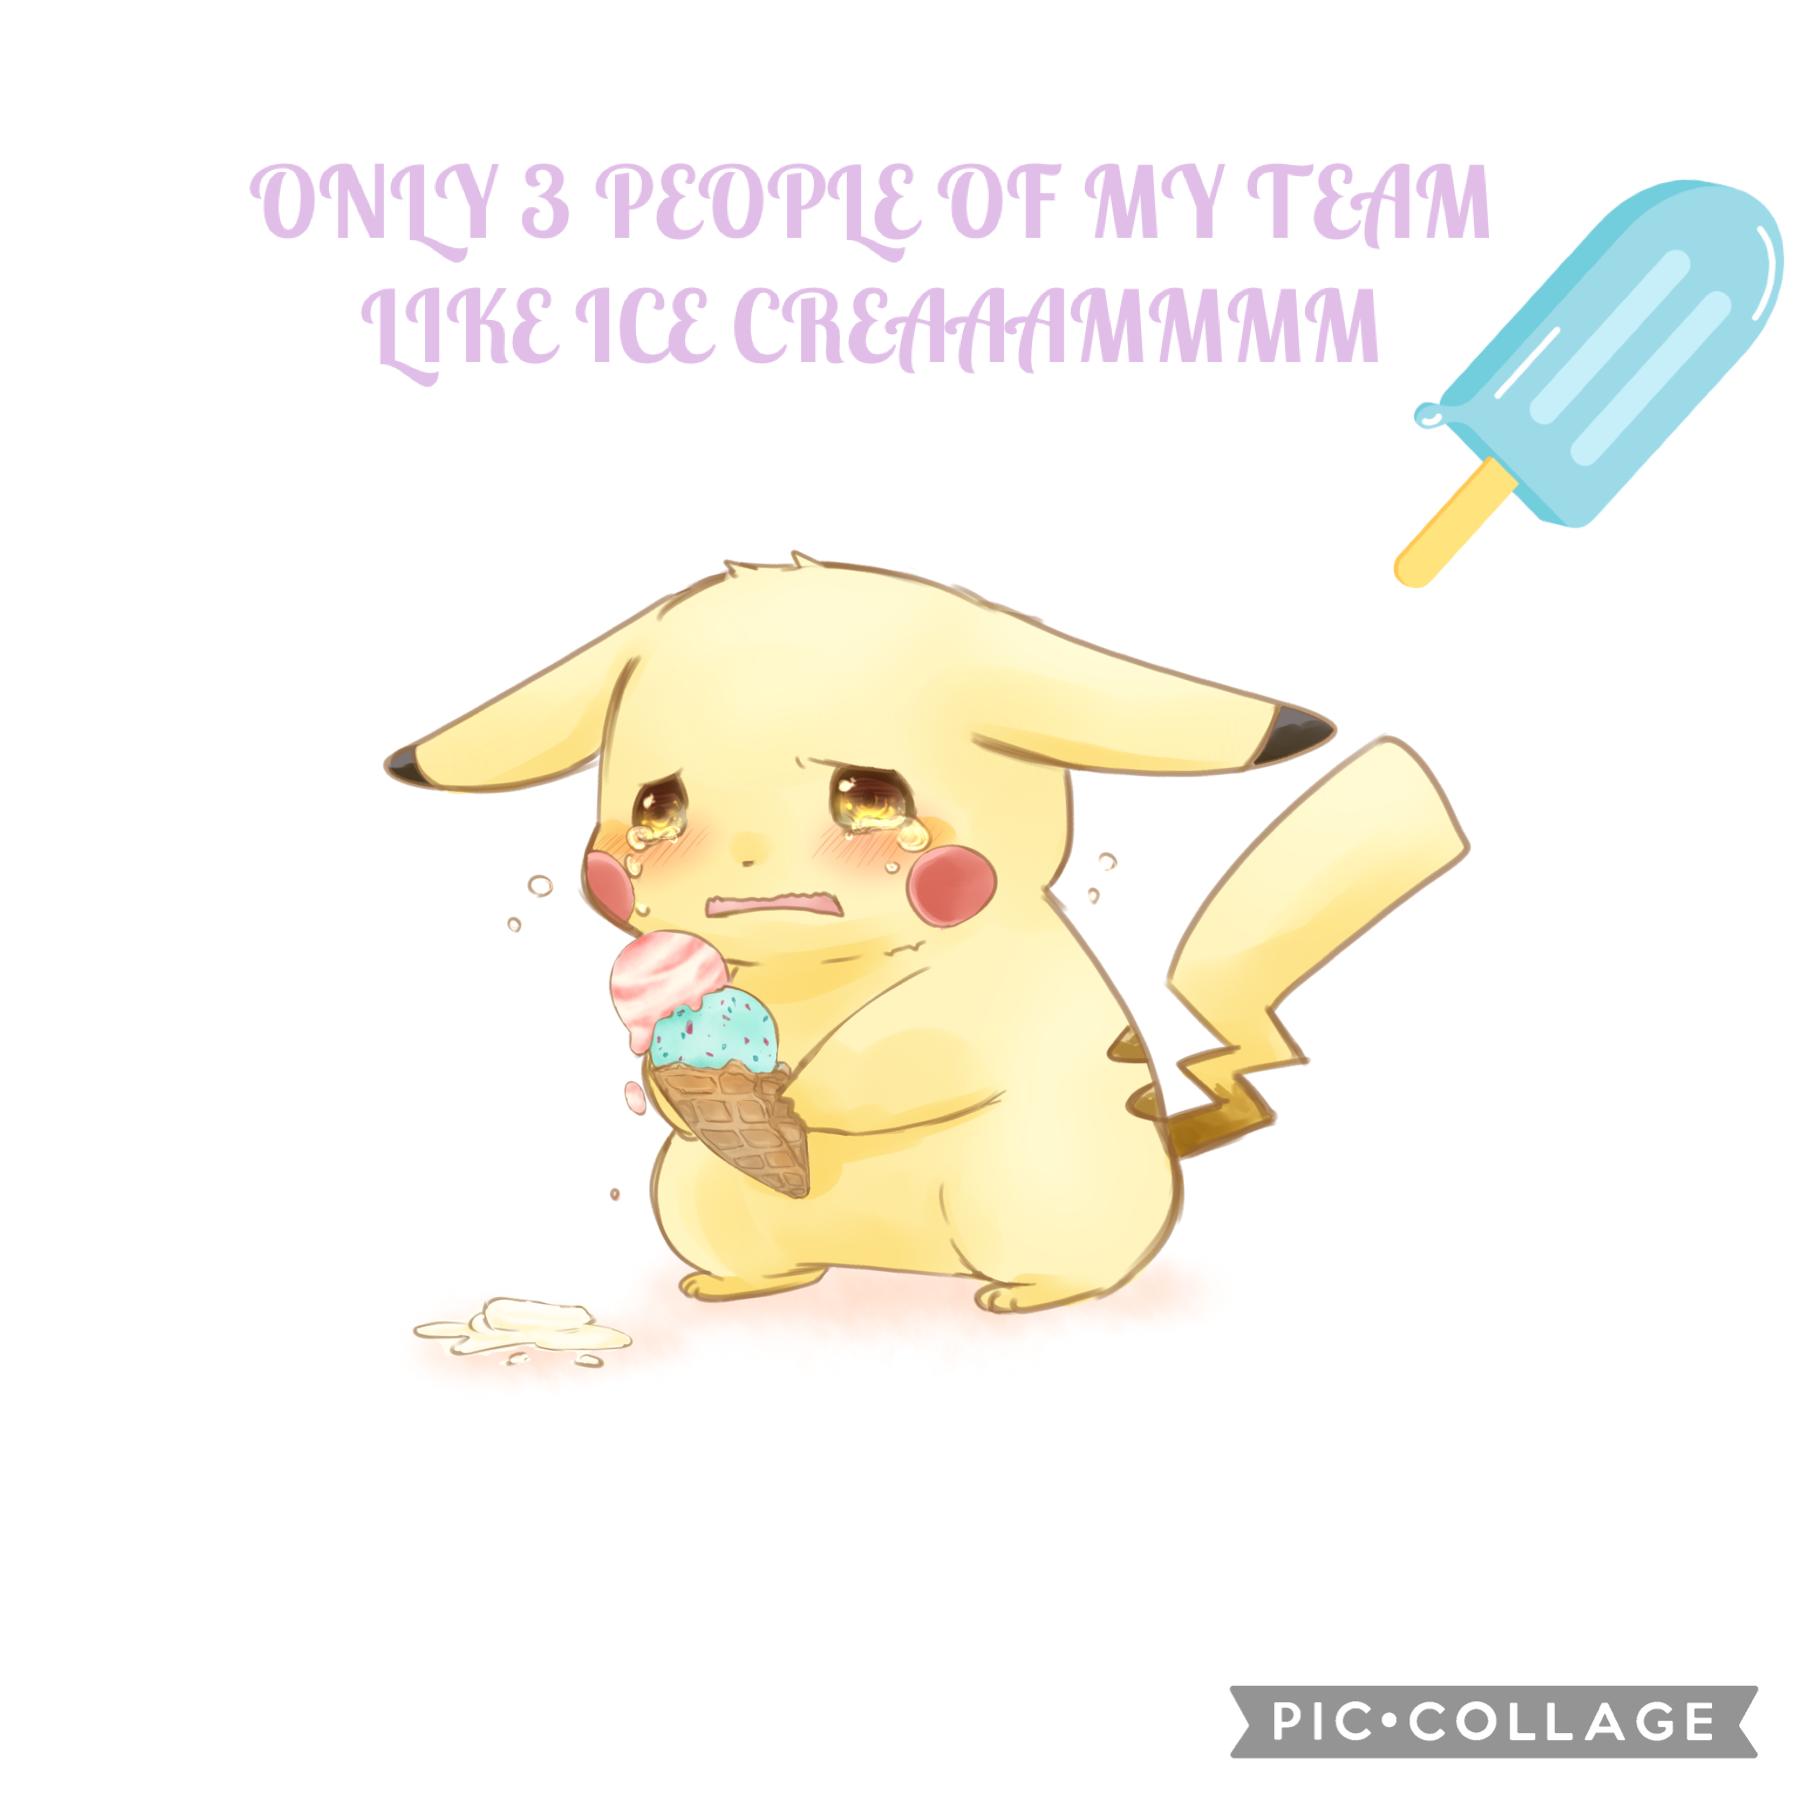 ice creeeeeeeeem